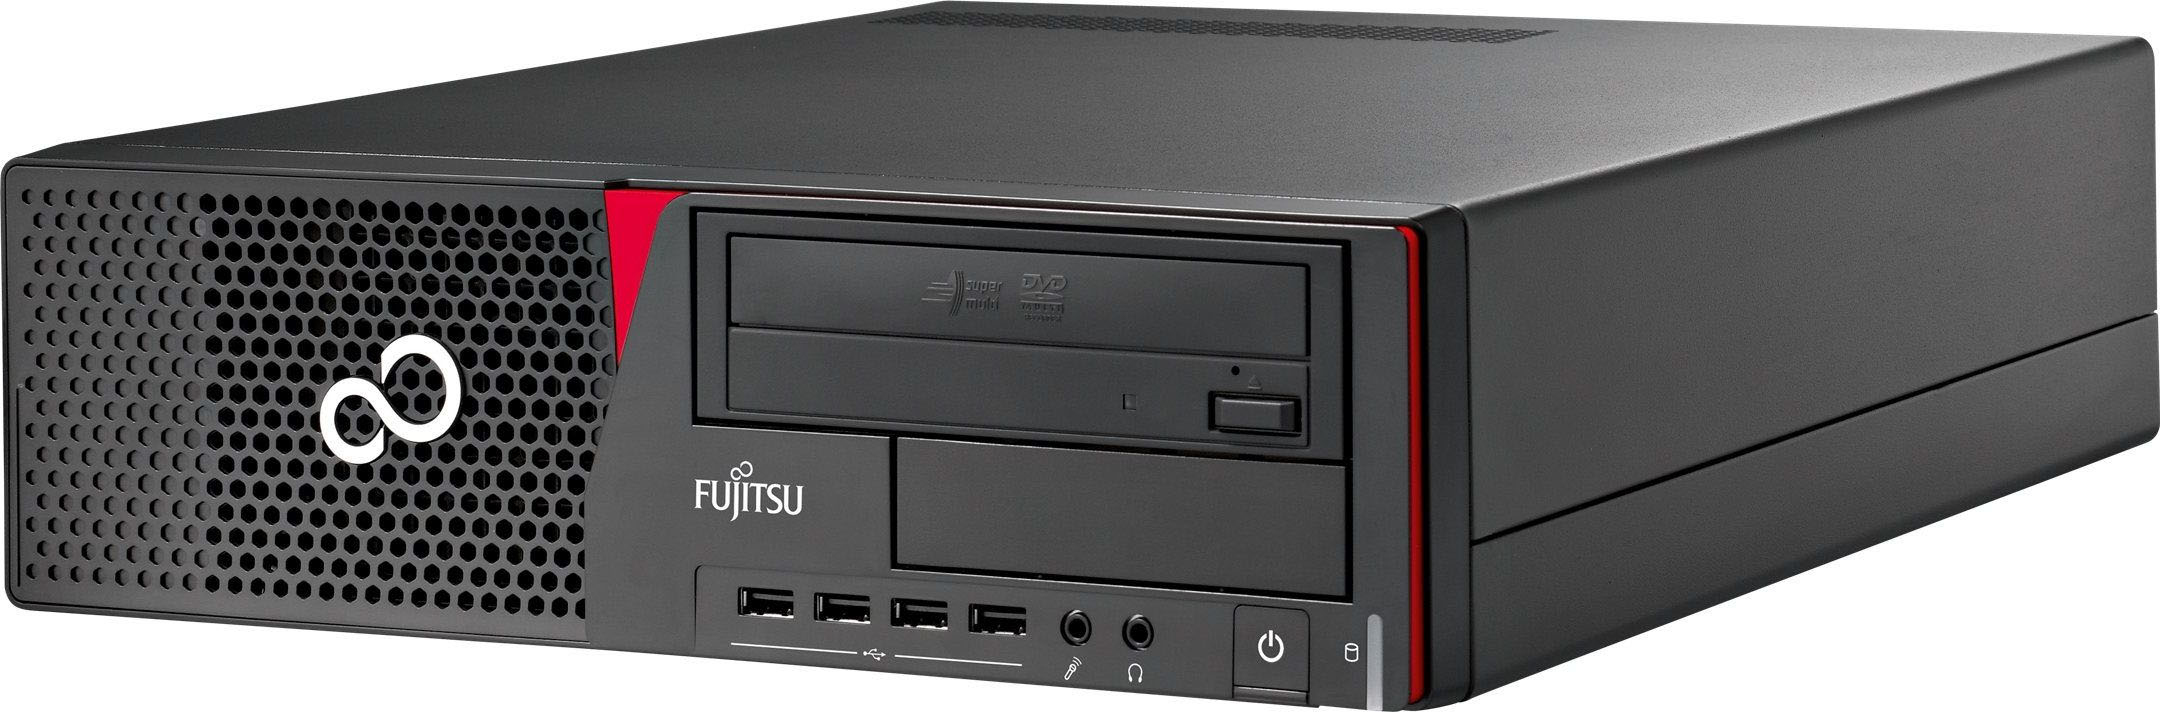 Fujitsu Esprimo E720 E90